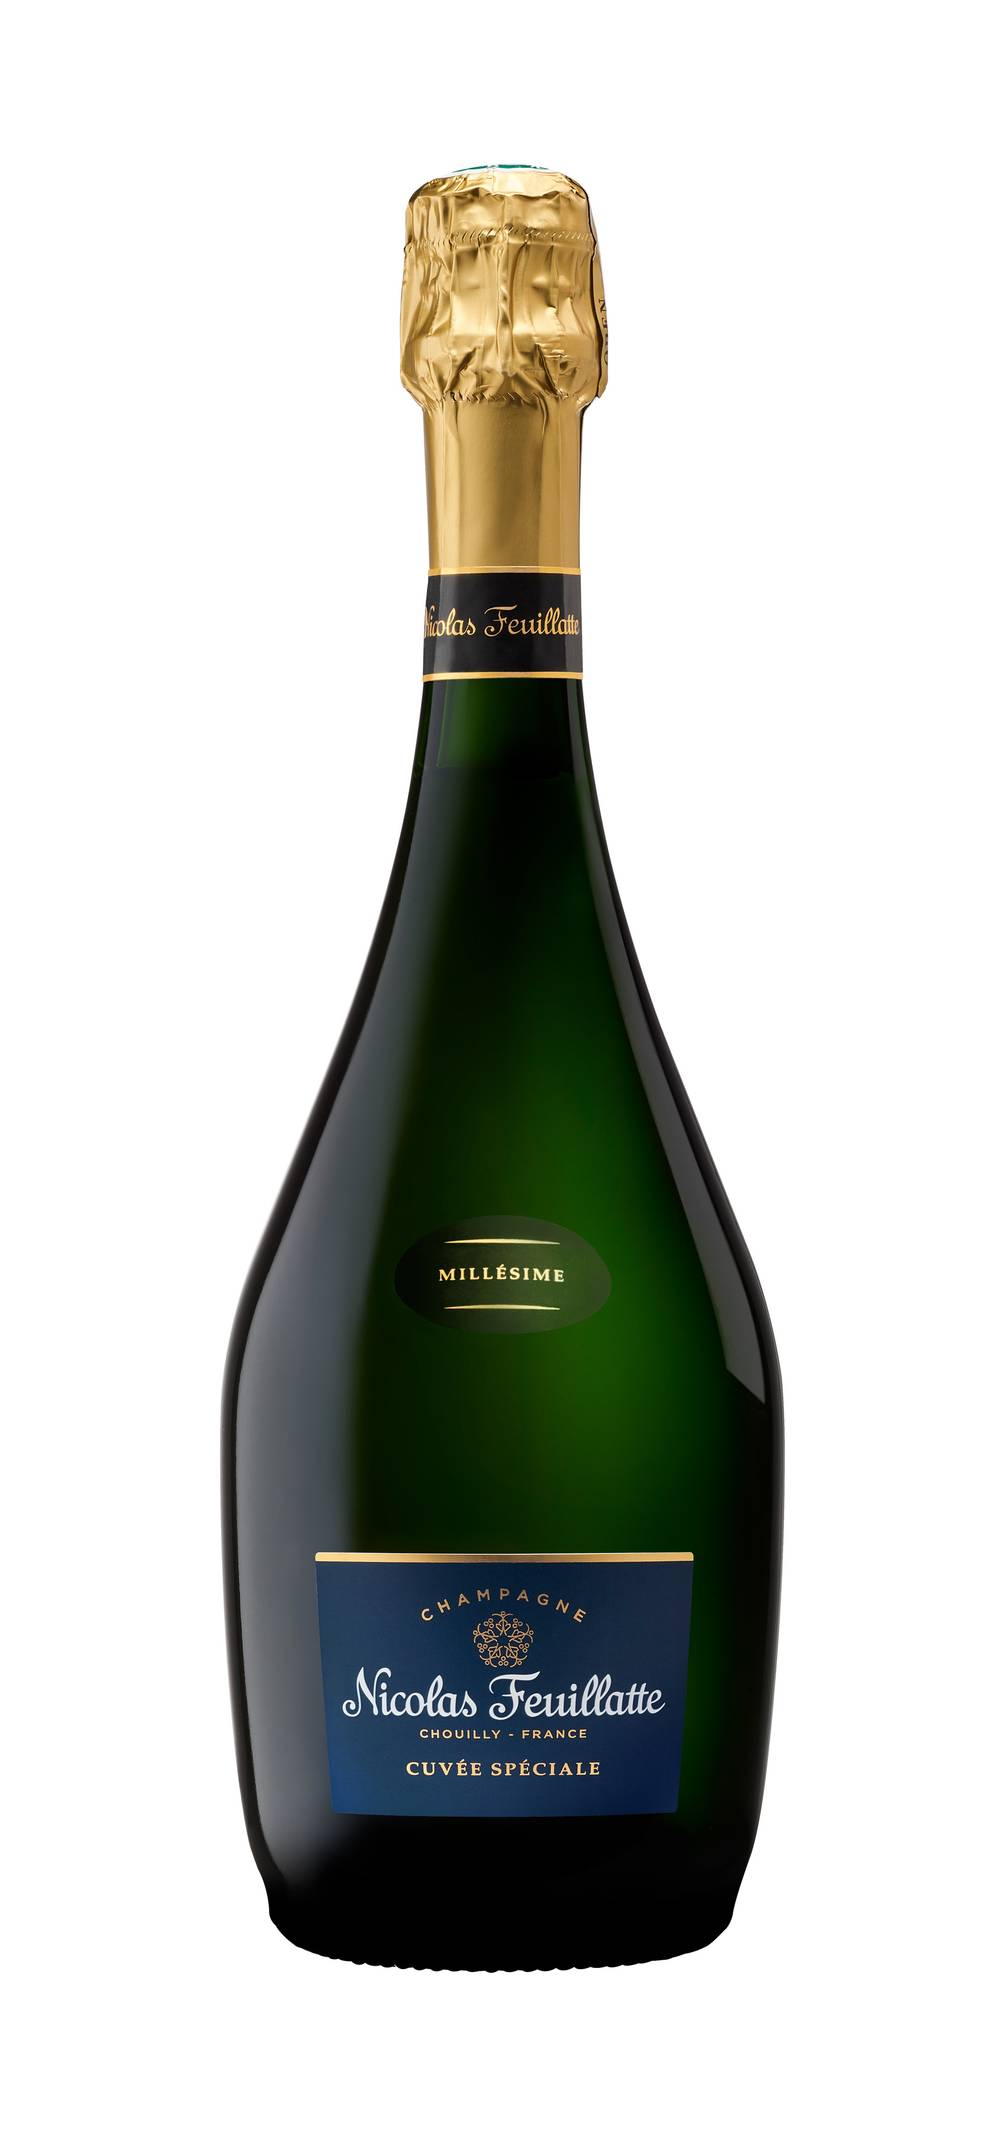 Nicolas Feuillatte - Champagne cuvée spéciale (750 ml)